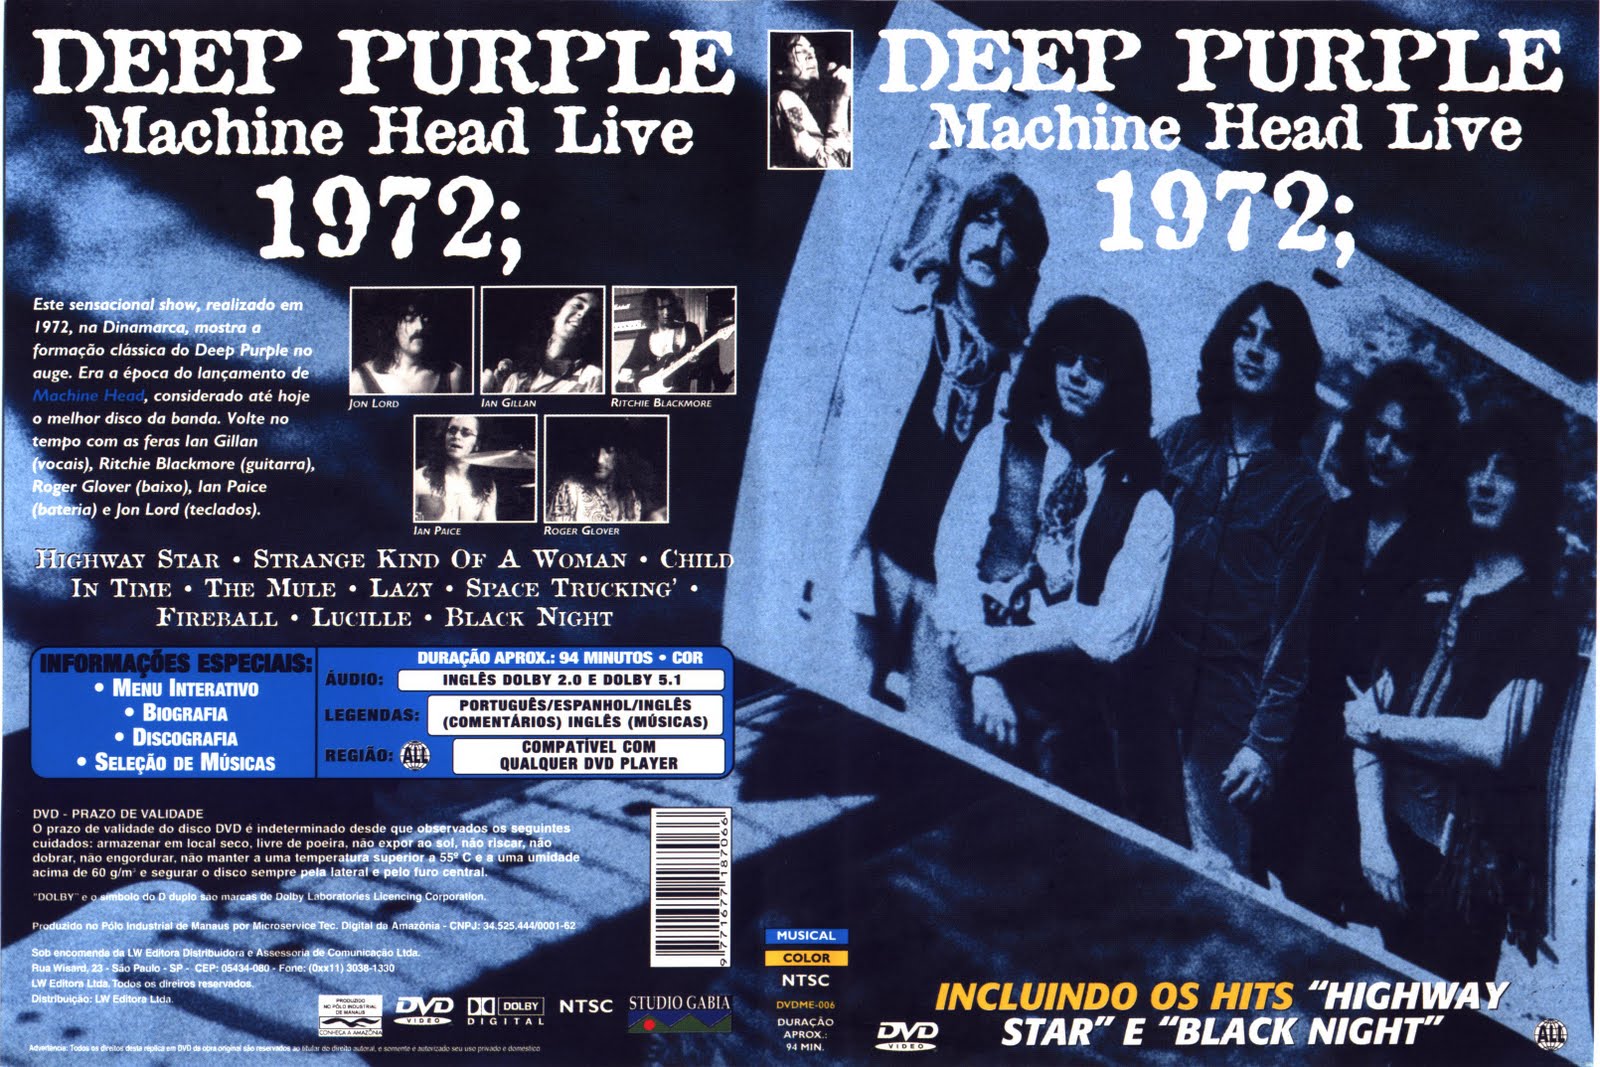 Дип перпл отзывы. Группа Deep Purple 1972. Deep Purple 1972 Live. Концерт дип перпл 1972. Deep Purple обложка DVD.